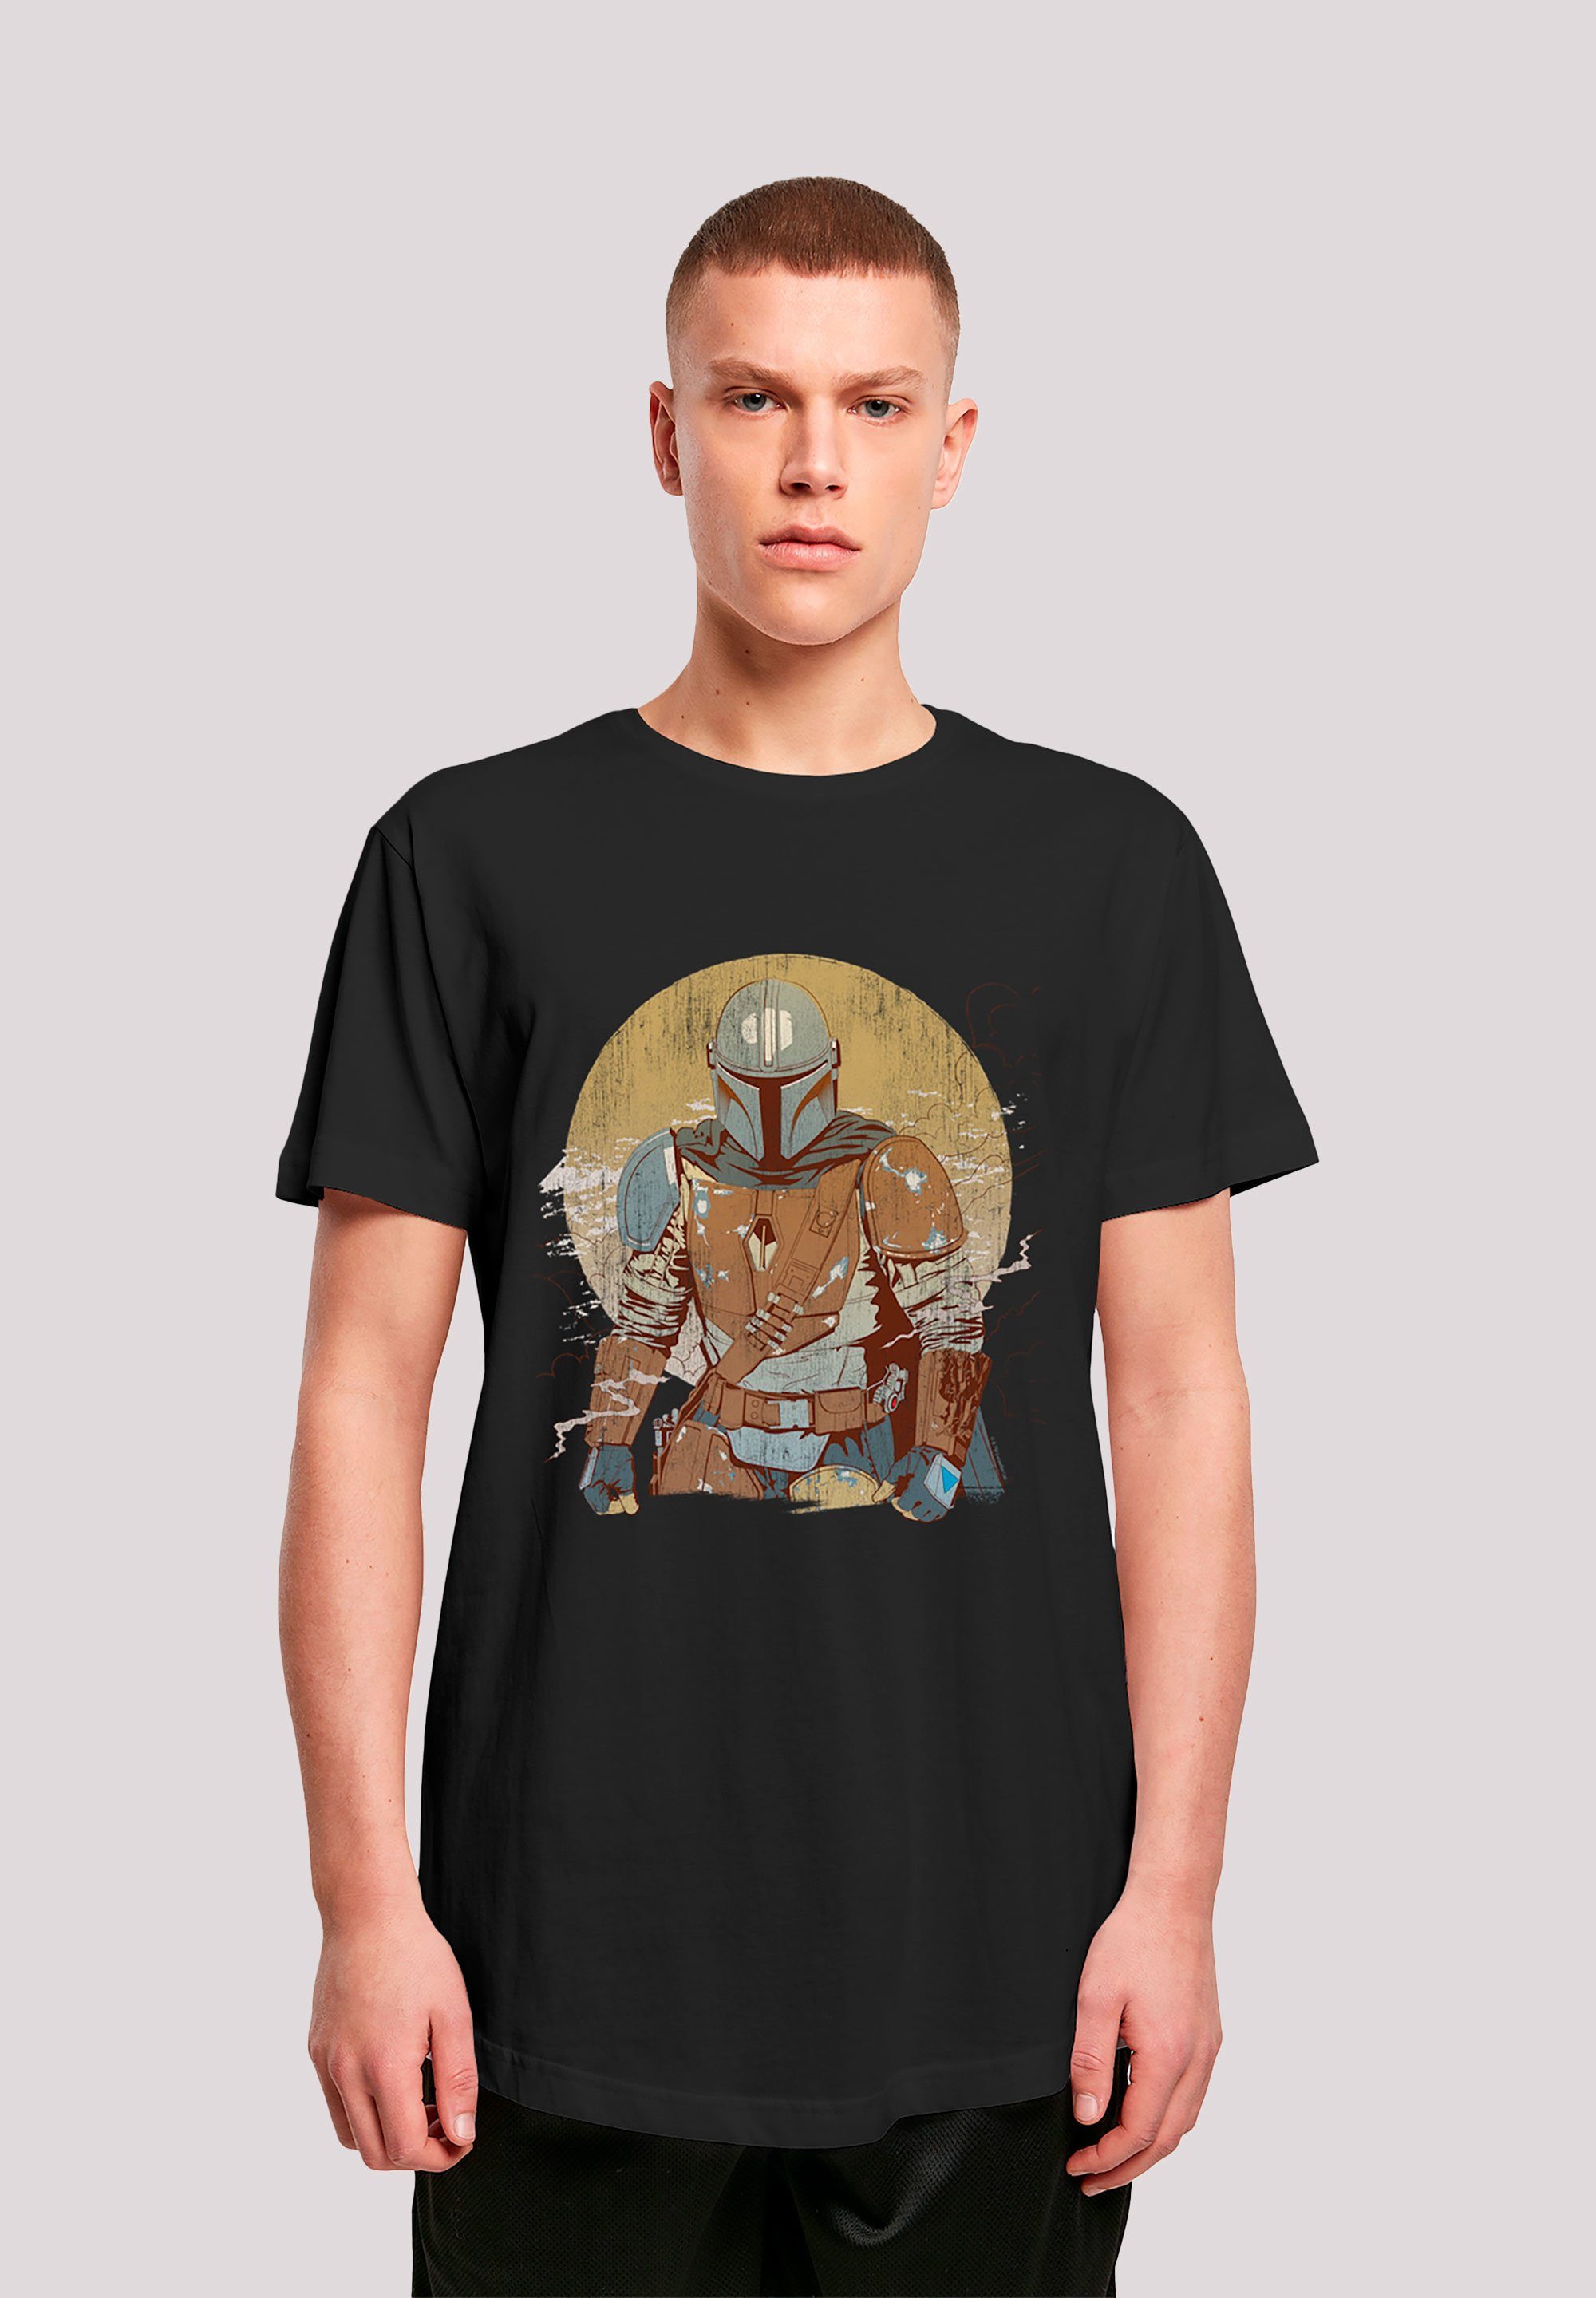 der Warrior Distressed Krieg Mandalorian Star The T-Shirt Wars Sterne Print F4NT4STIC